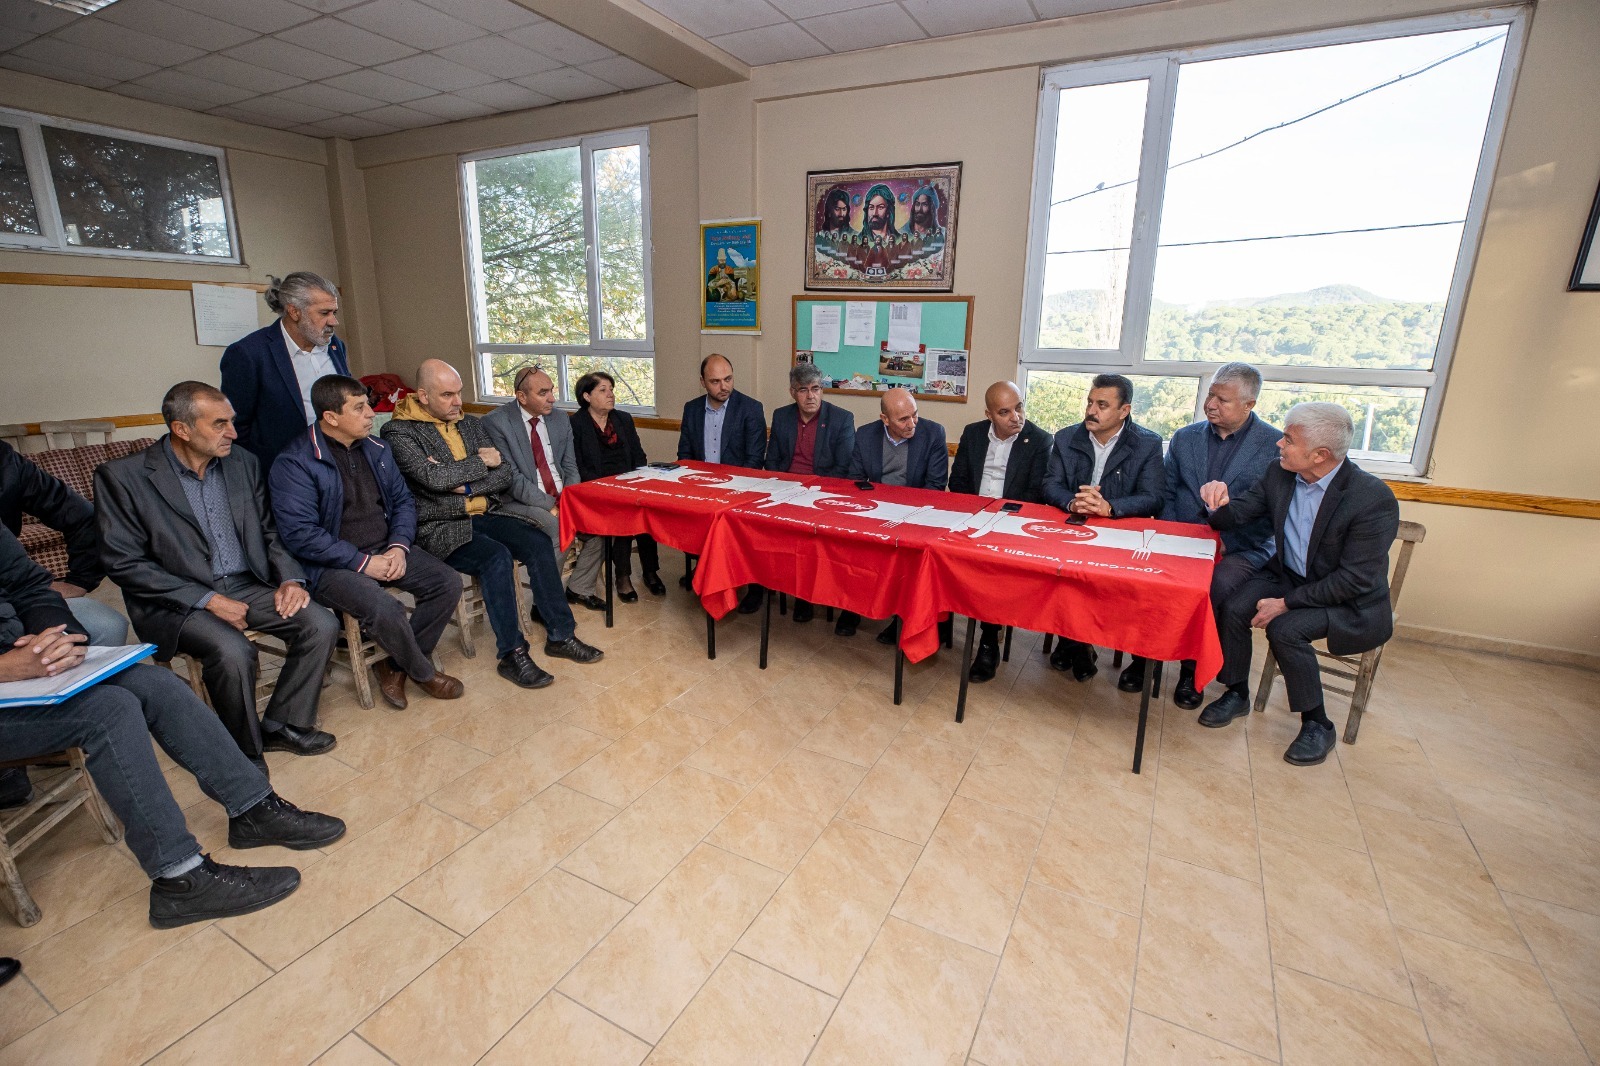 Başkan Soyer Bergama turunda üreticilerle buluştu: “Kooperatif kurun, ürünlerinizi alalım”